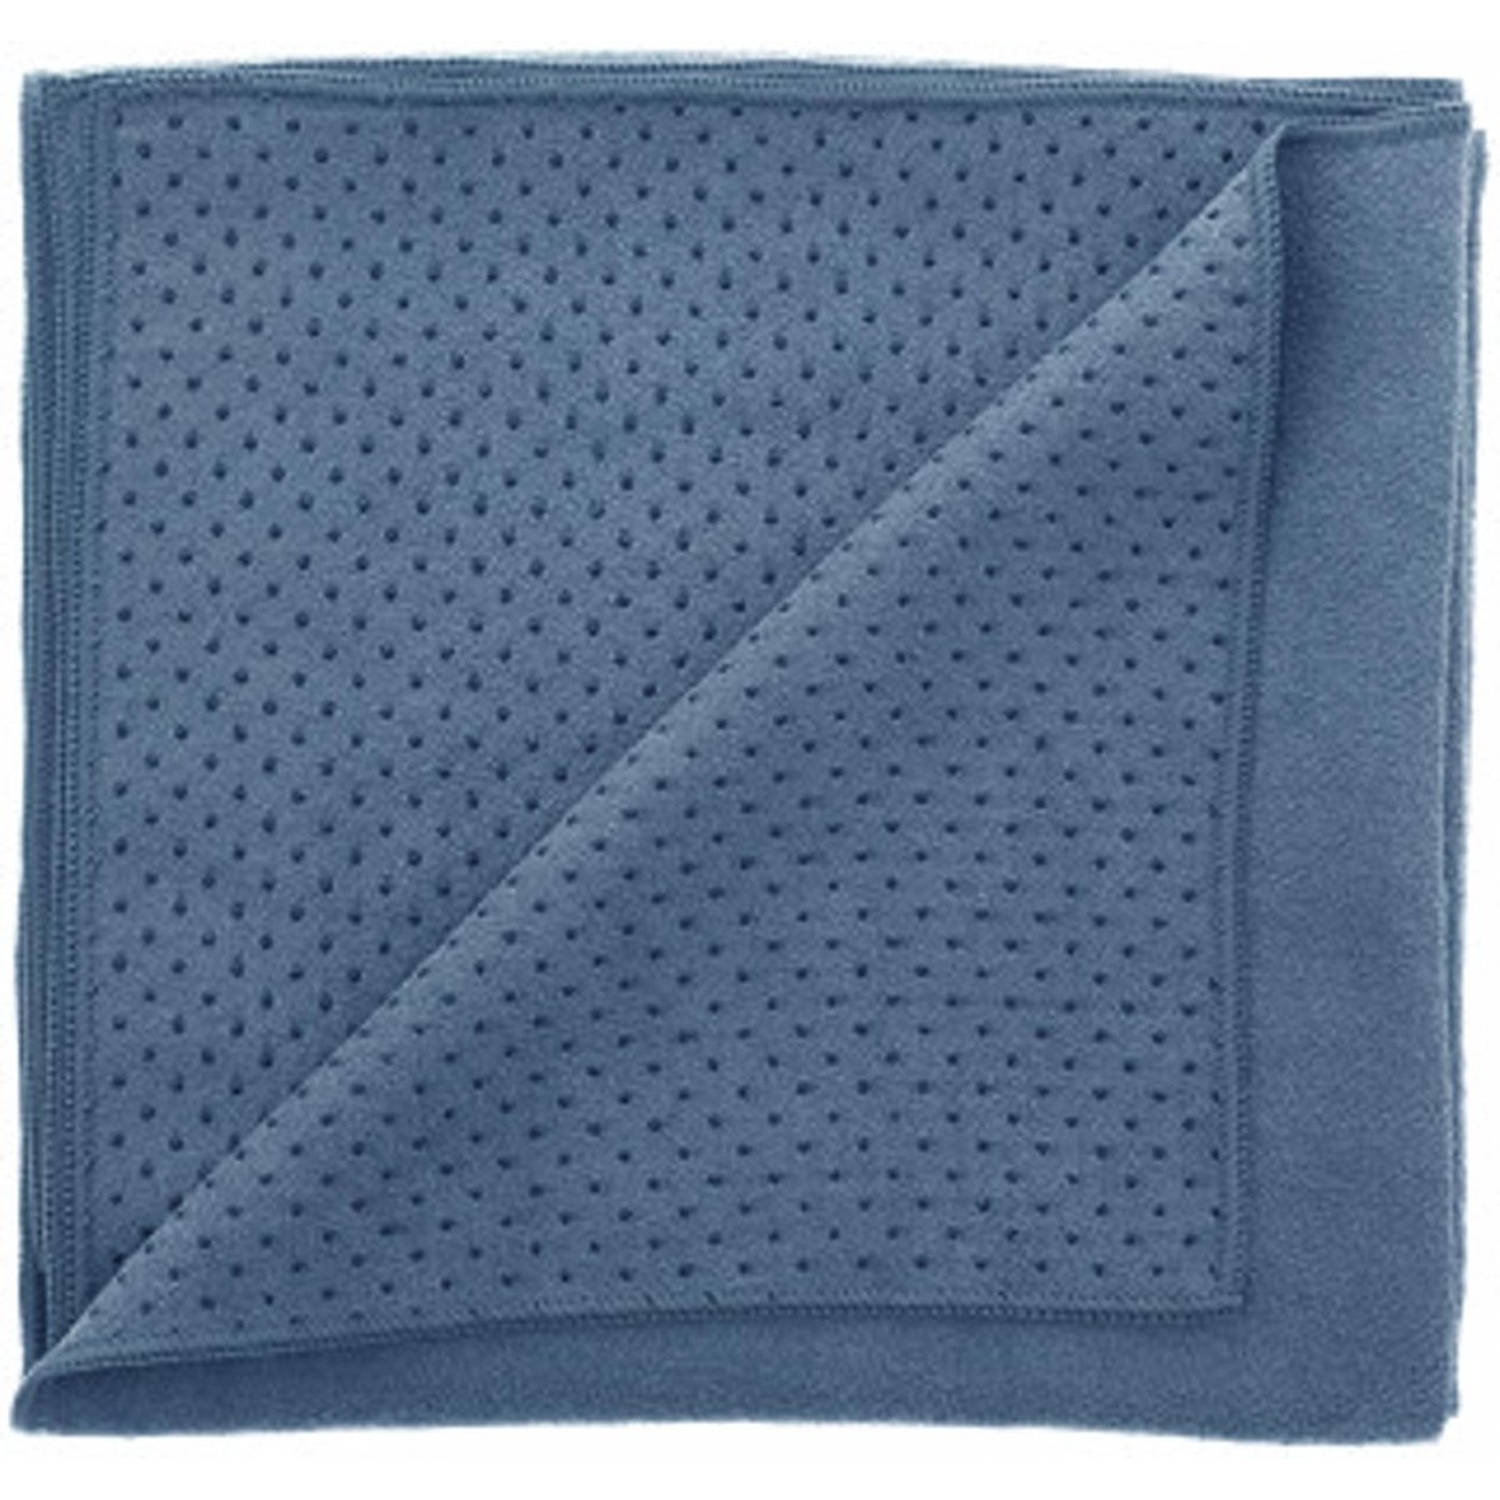 Yoga handdoek - handdoek - anti slip yoga handdoek- Silicone Yoga handdoek met anti slip - 175 x 60 cm - Blauw